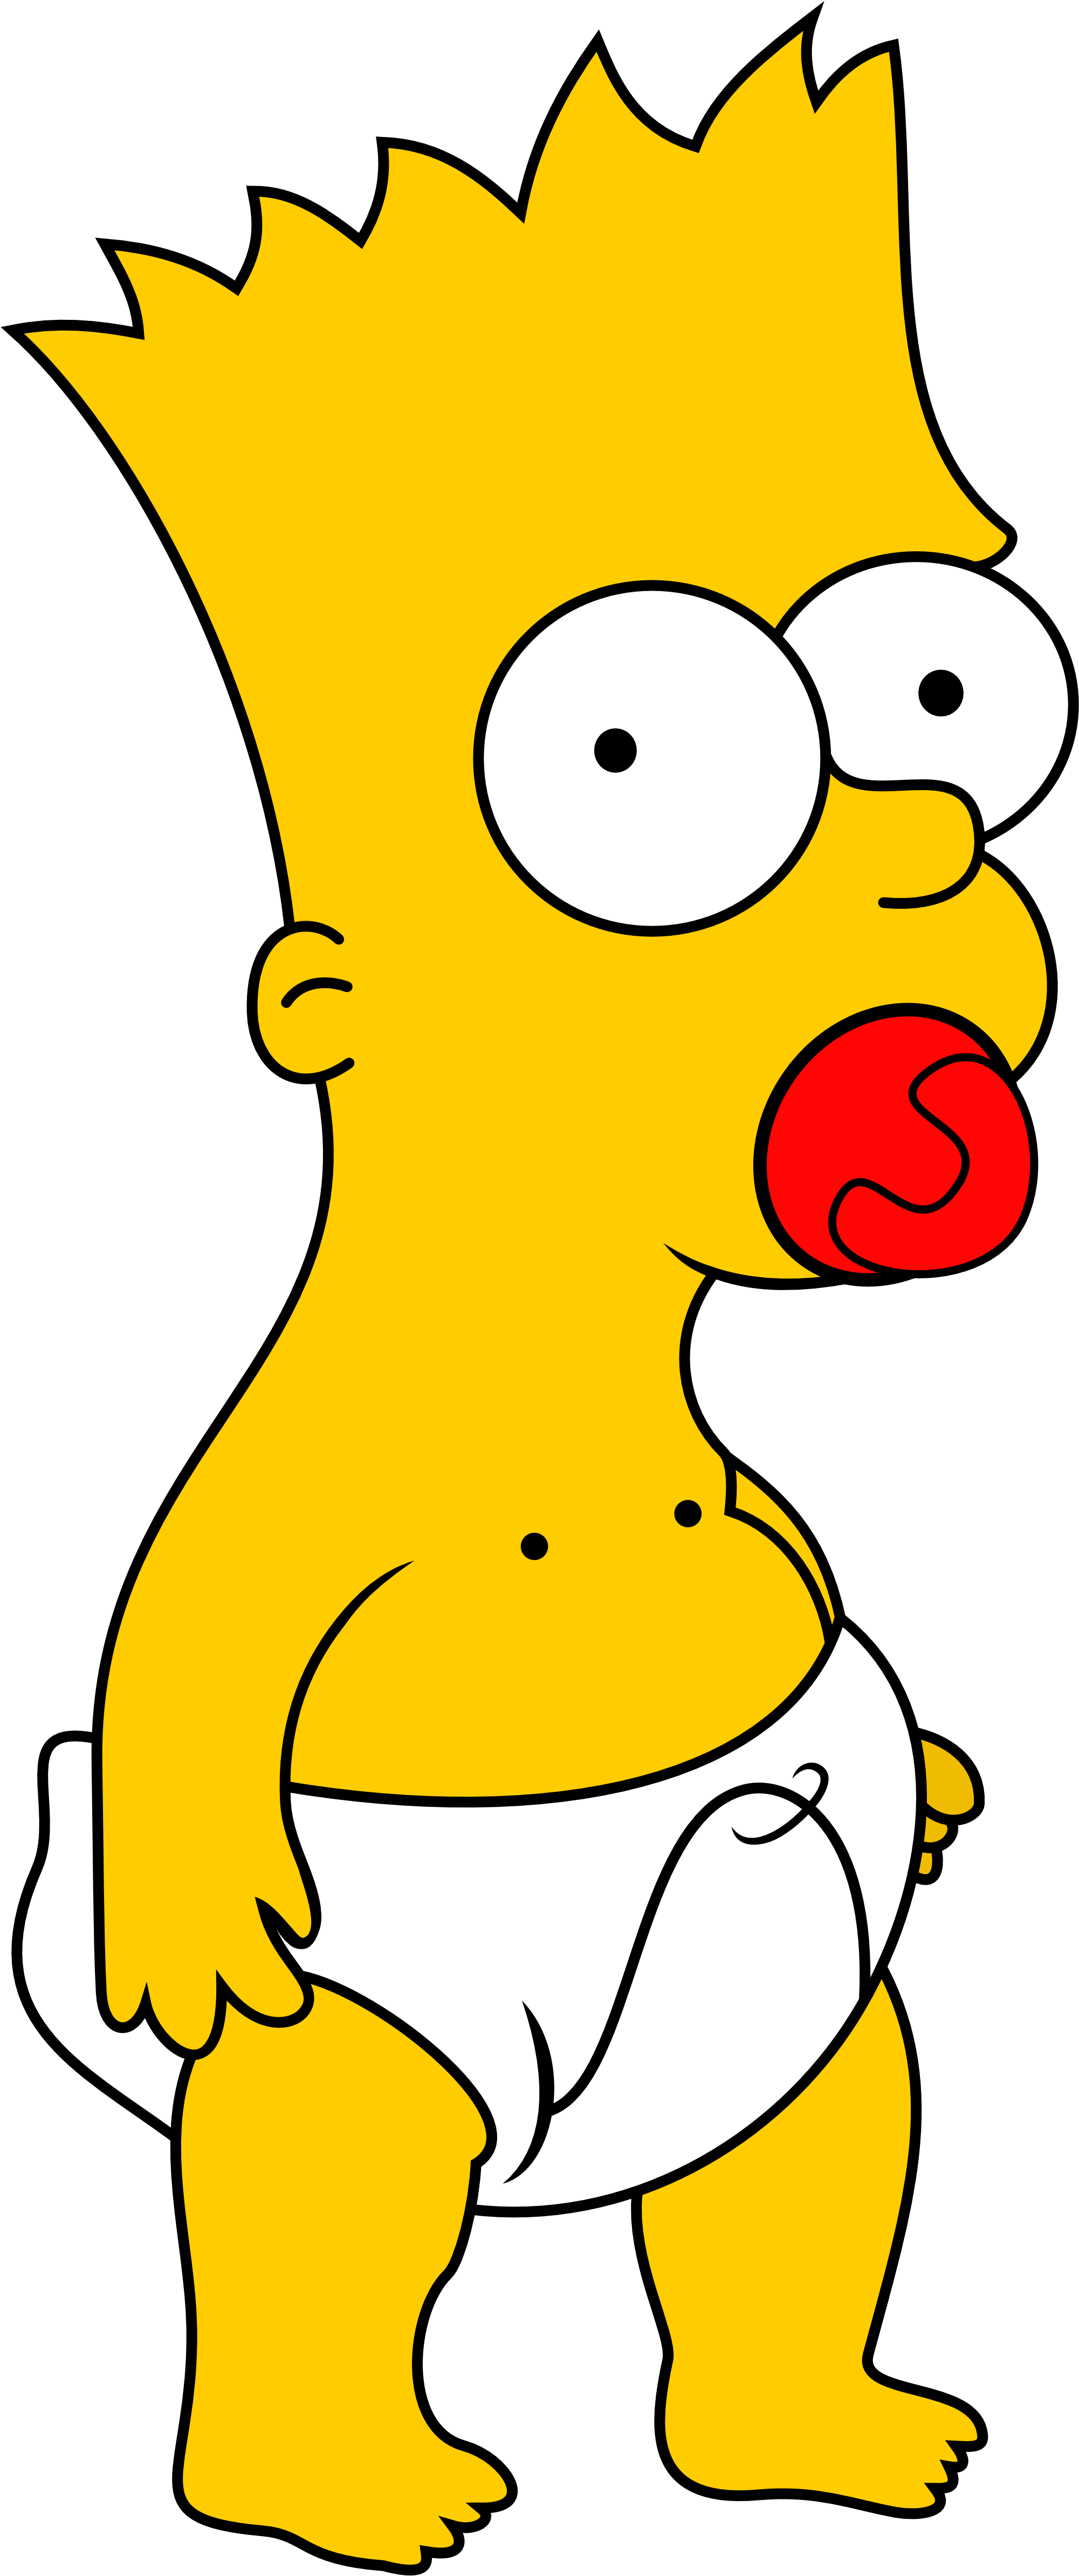 Cartoon Homer Simpson PNG Transparent Image